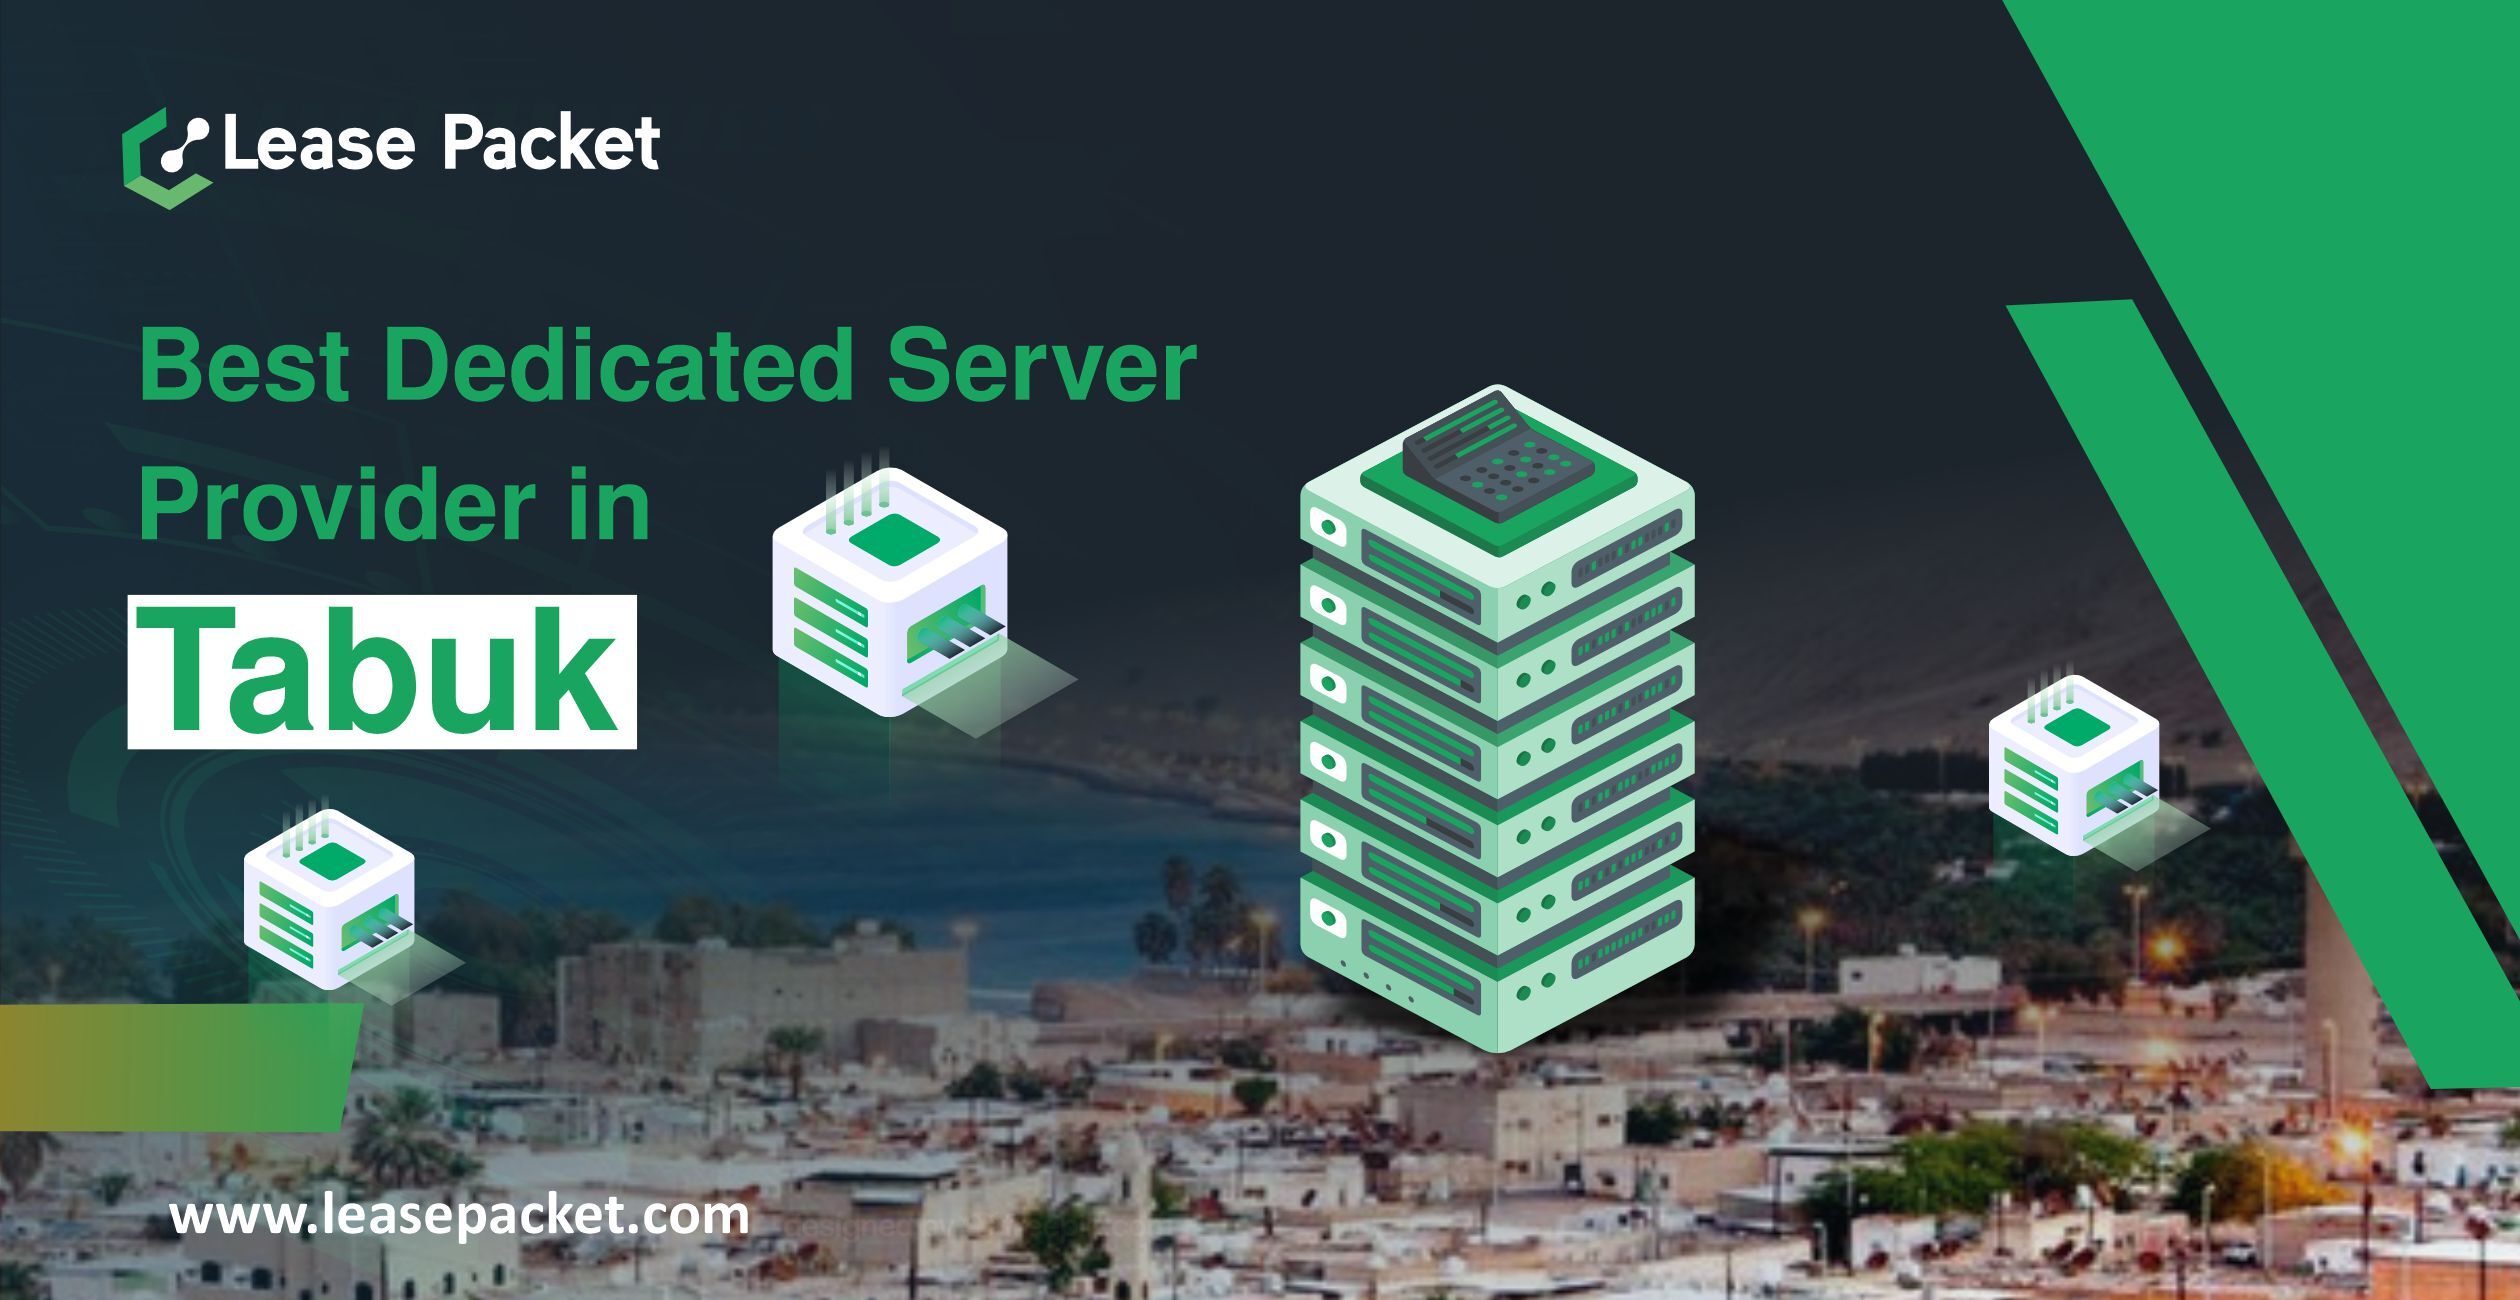 Dedicated server provider in Tabuk